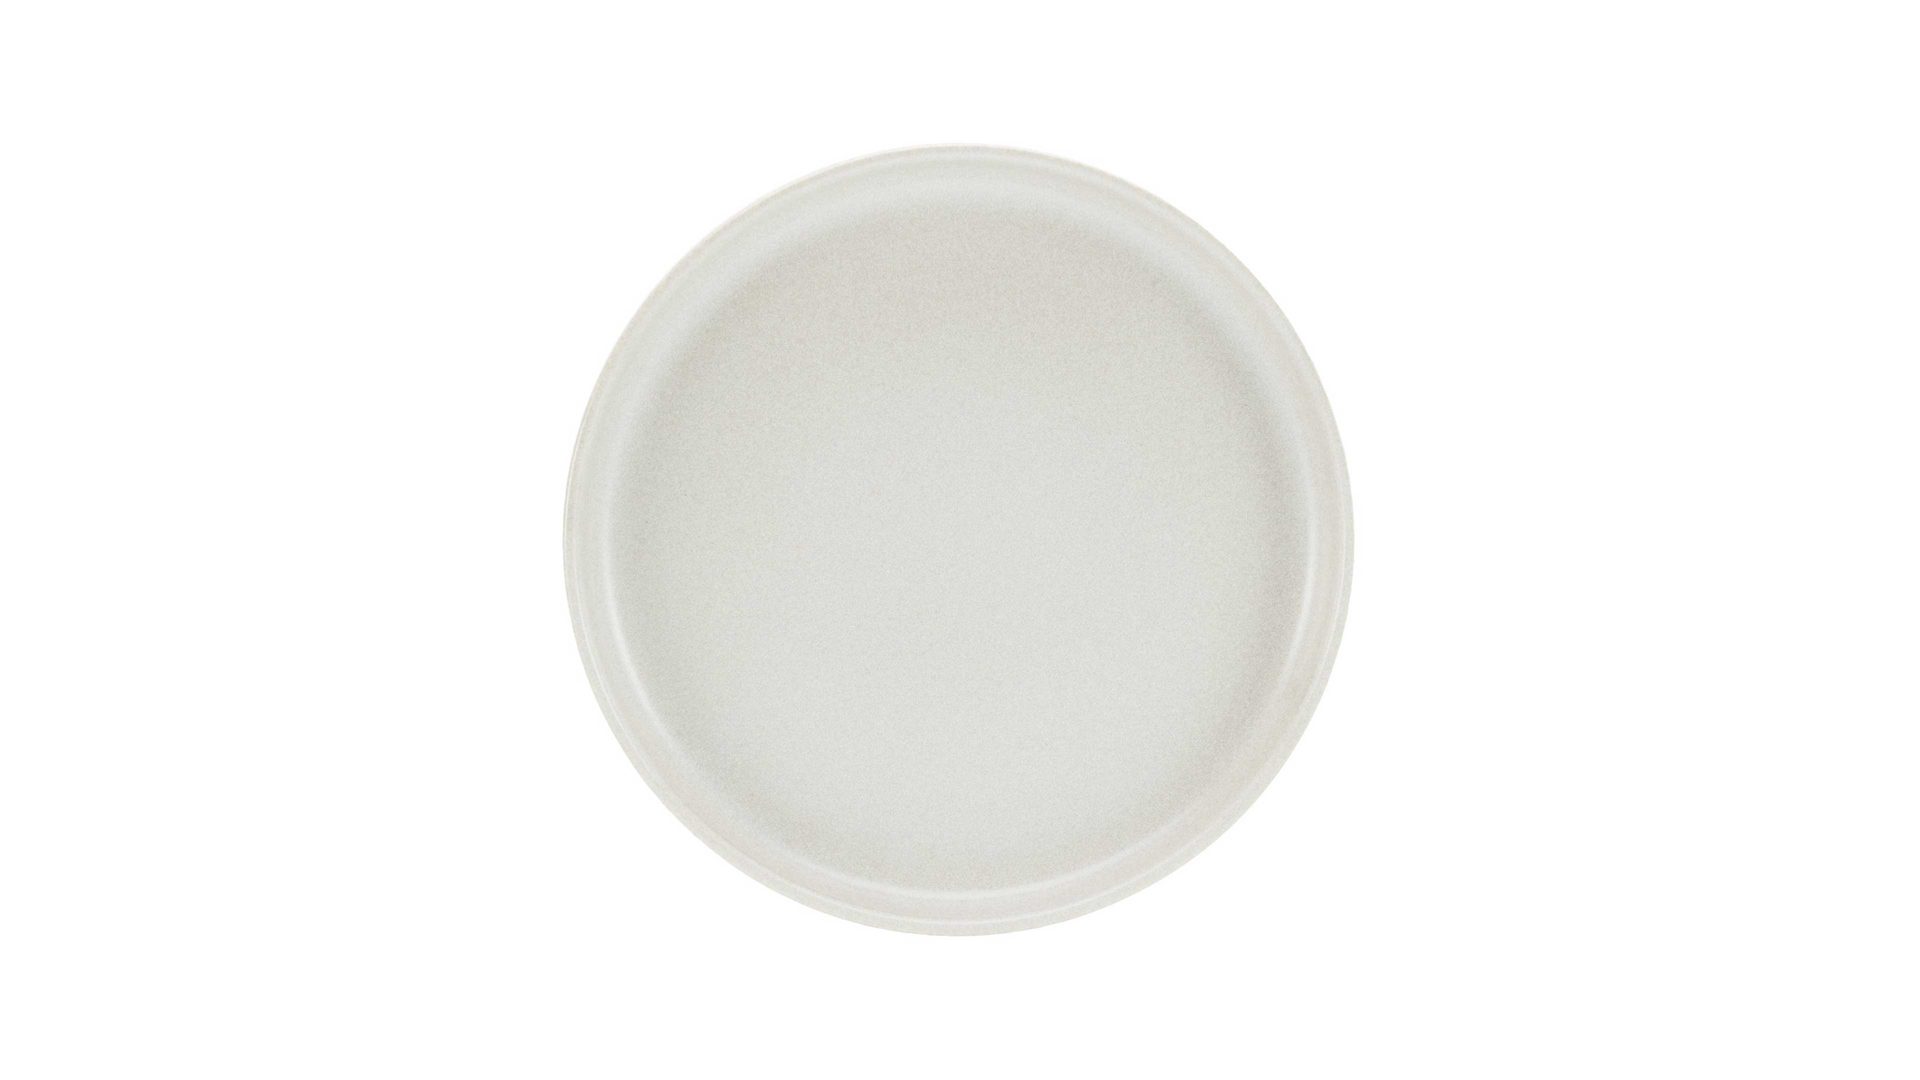 Kuchen- / Frühstücks- / Dessertteller Interliving BEST BUDDYS! aus Keramik in Weiß Interliving BEST BUDDYS! Uno – Dessertteller weißes Steinzeug – Durchmesser ca. 21 cm